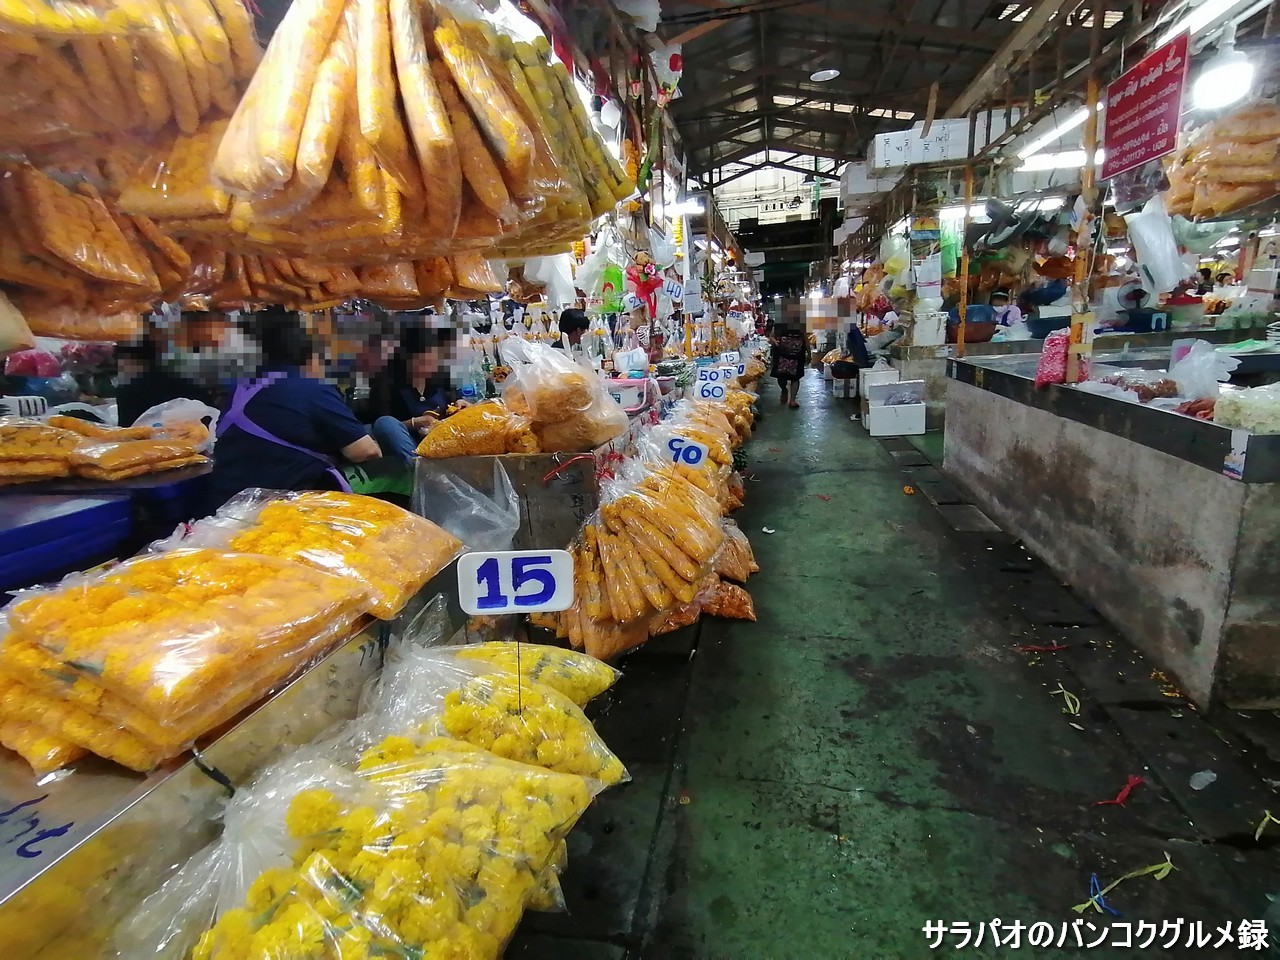 パーククローン花市場は花市場と青果市場から成る大きな市場＠バンコク旧市街